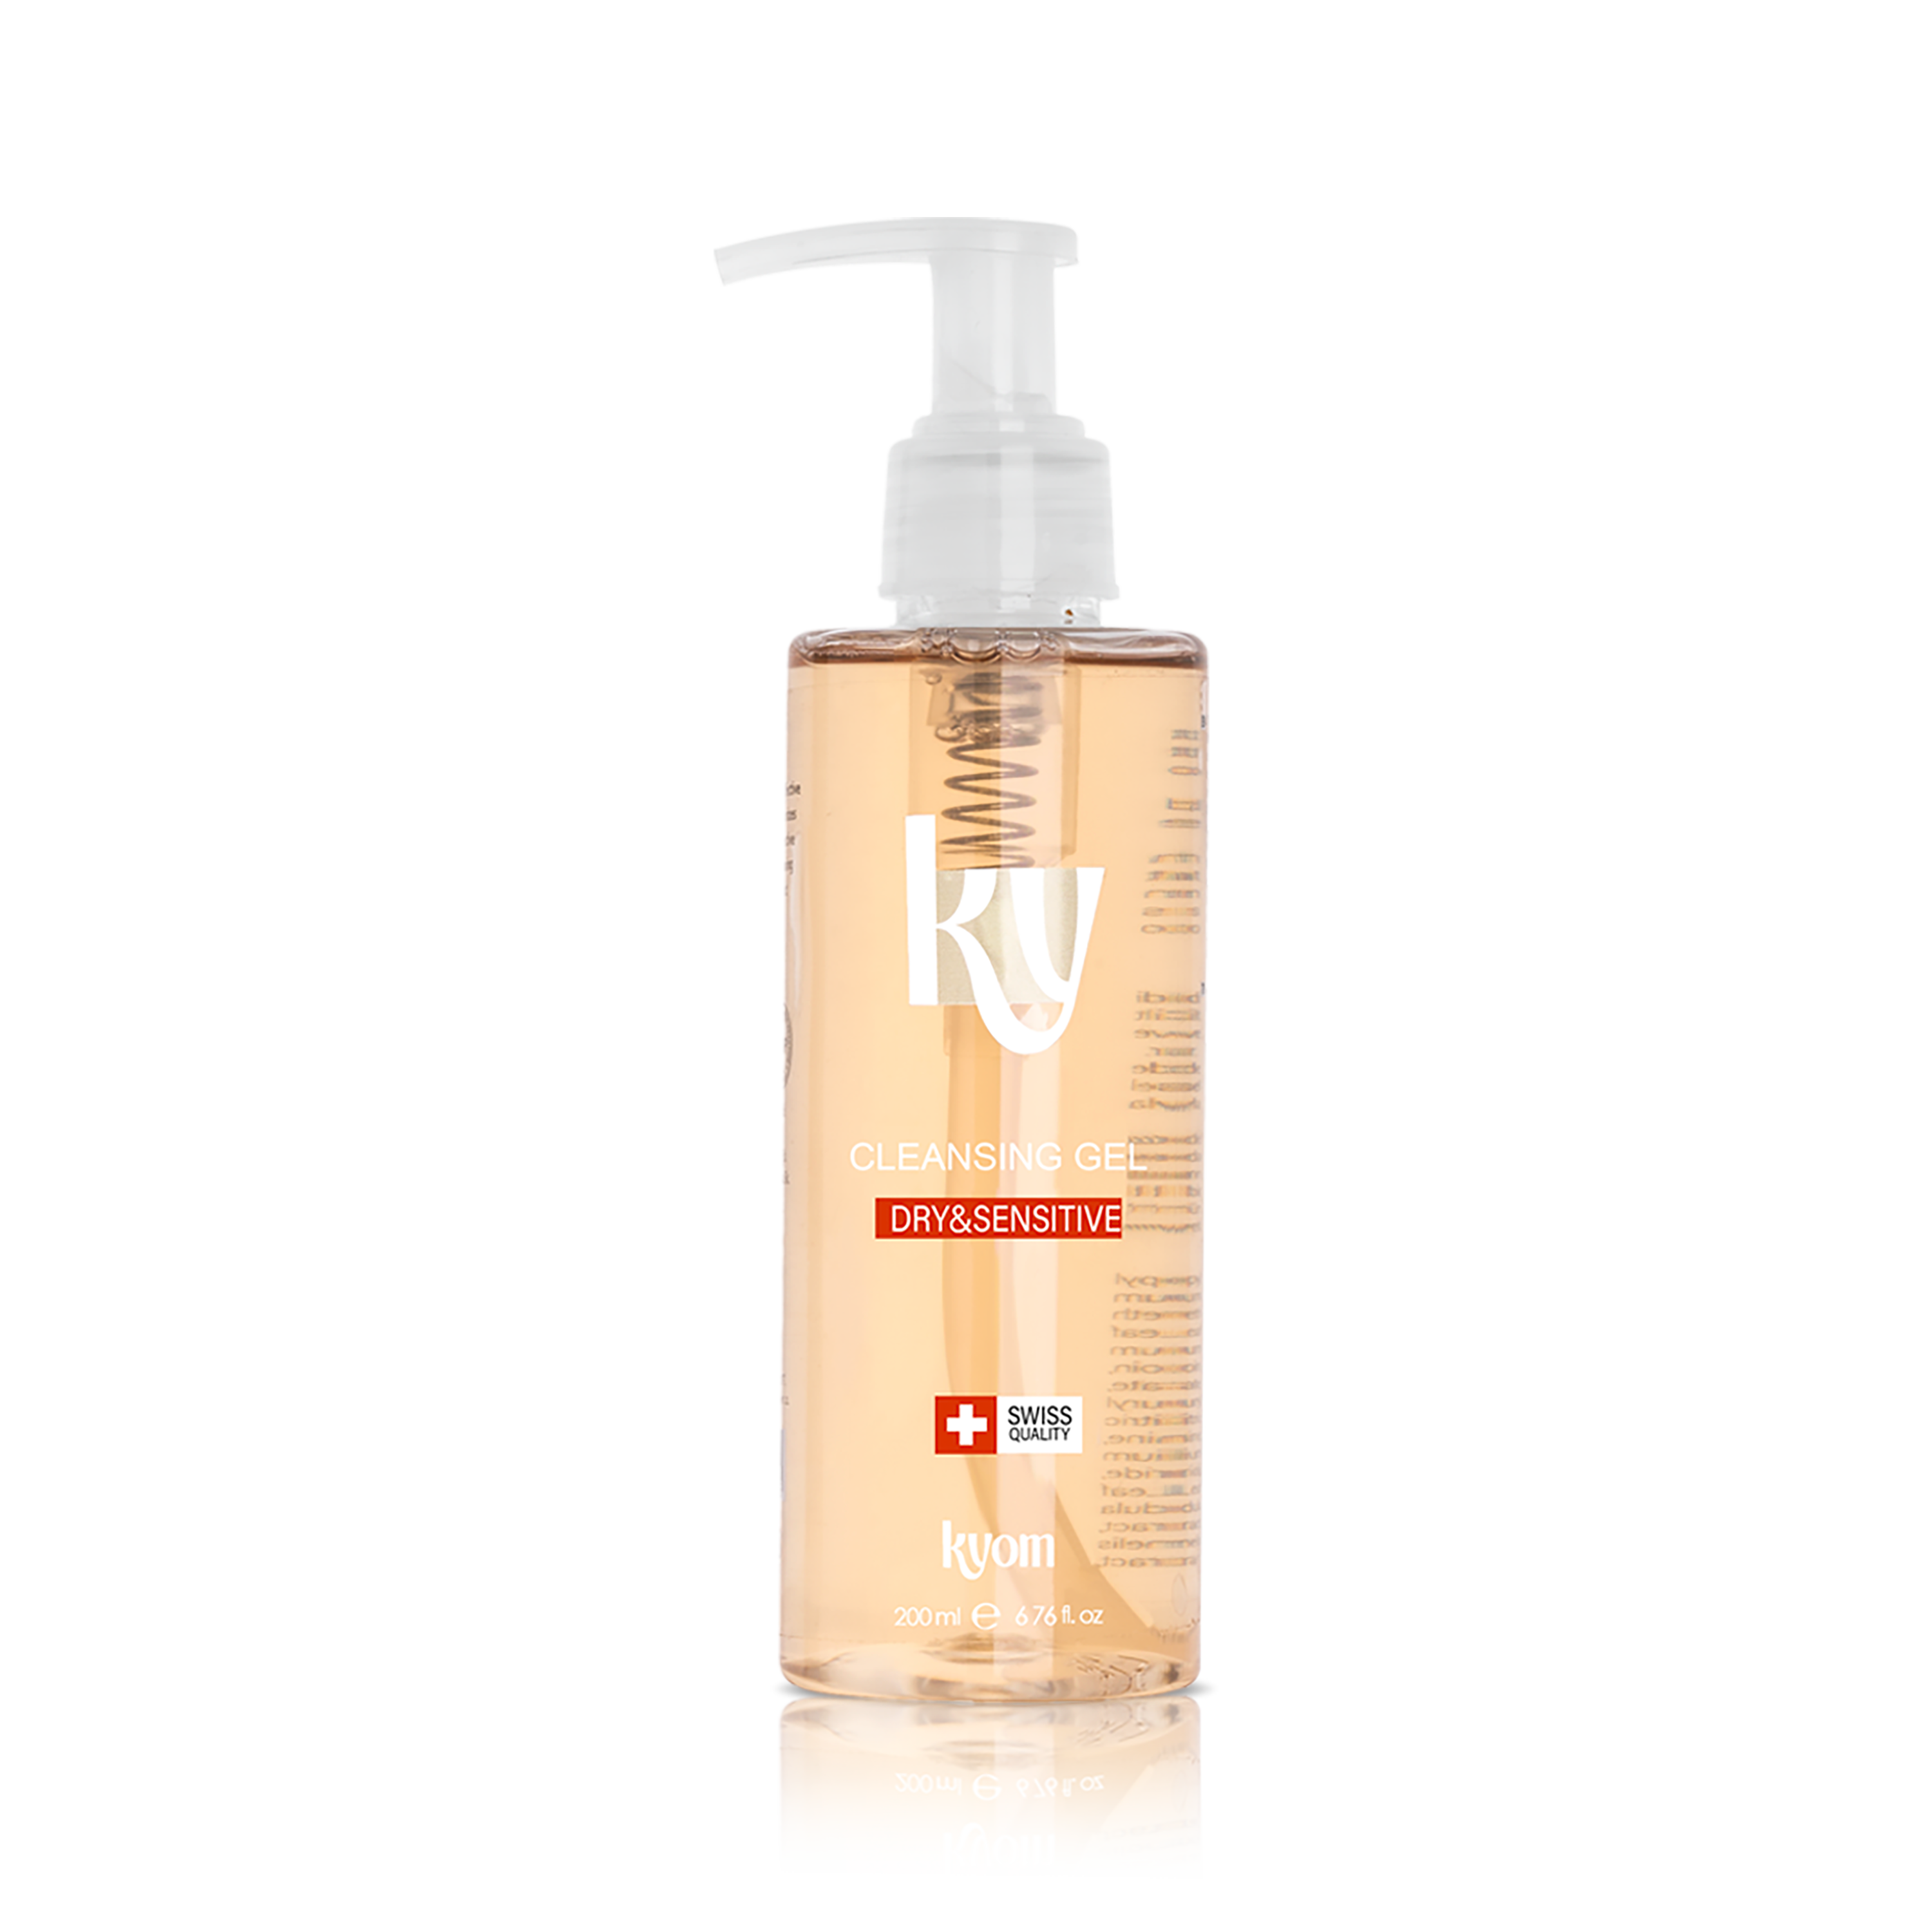 Kyom-Dry-Sensitive-Skin--Cleansing-Gel_1